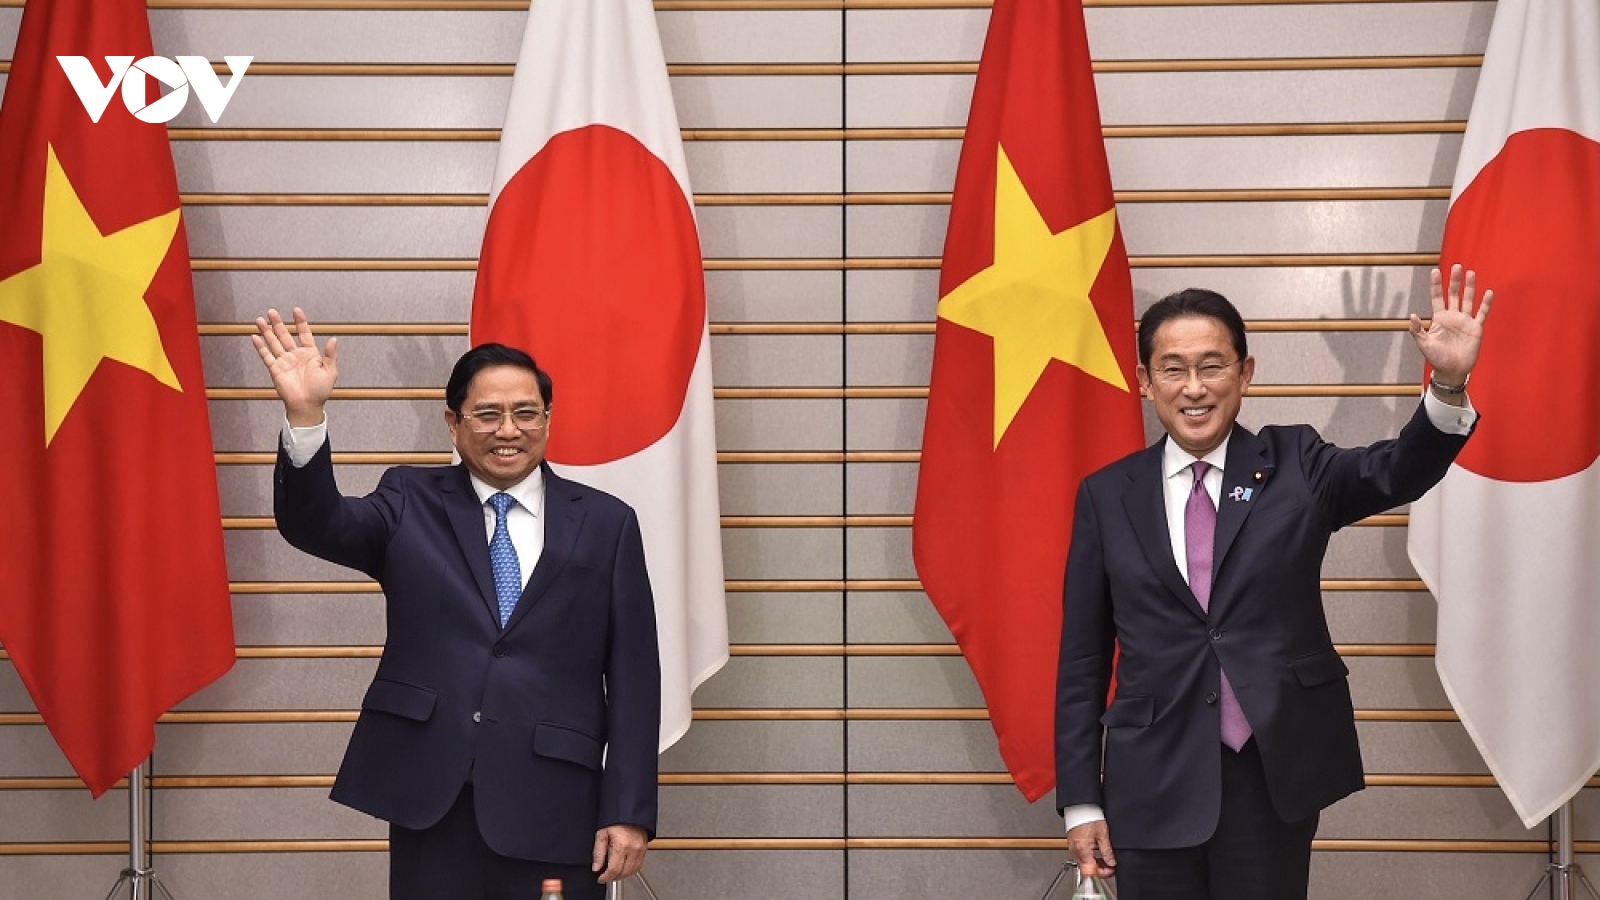 Chuyến thăm Nhật Bản của Thủ tướng: Củng cố niềm tin, thắt chặt tình hữu nghị giữa 2 nước